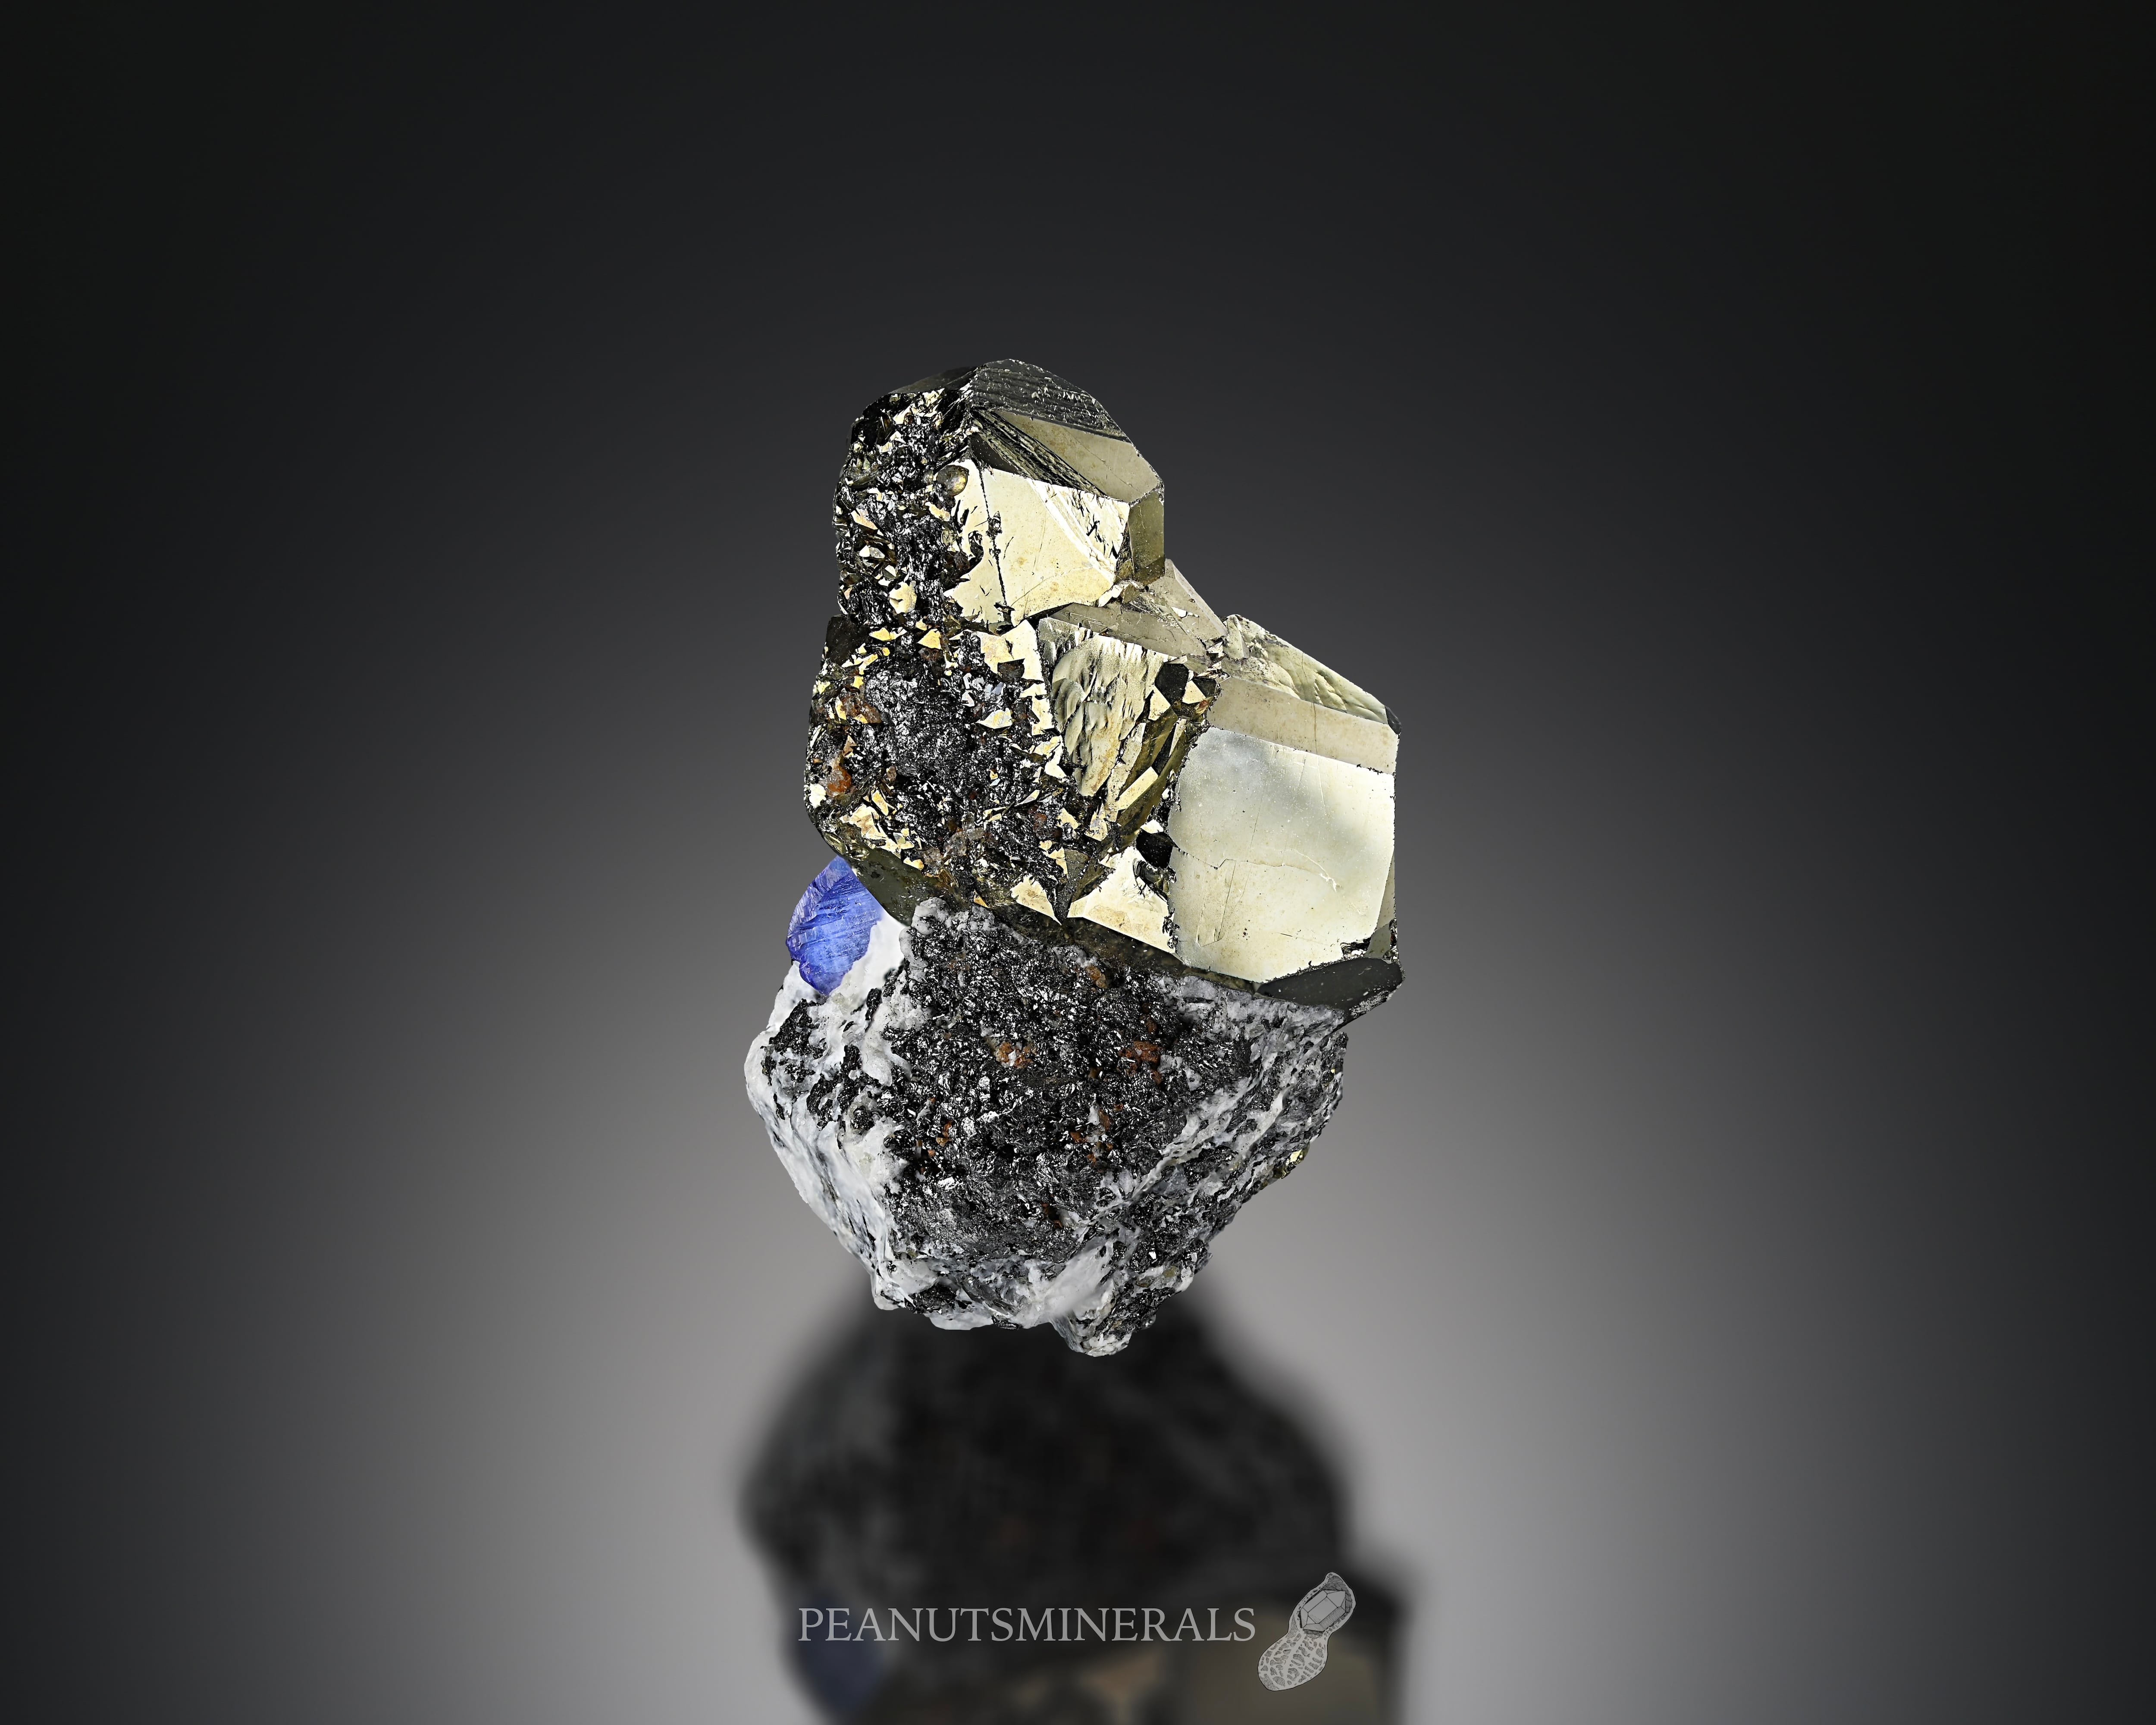 タンザナイト/パイライト【Tanzanite with Pyrite】タンザニア産